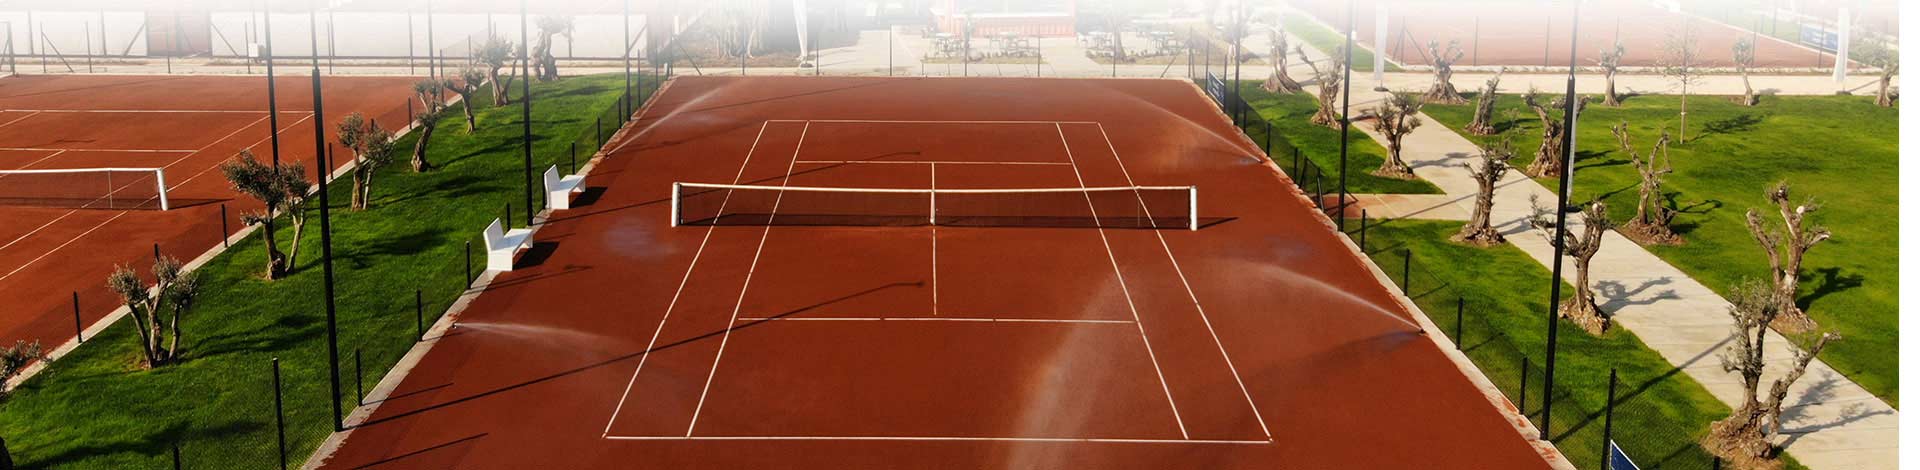 GD Tennis Bursa Spor Okulu